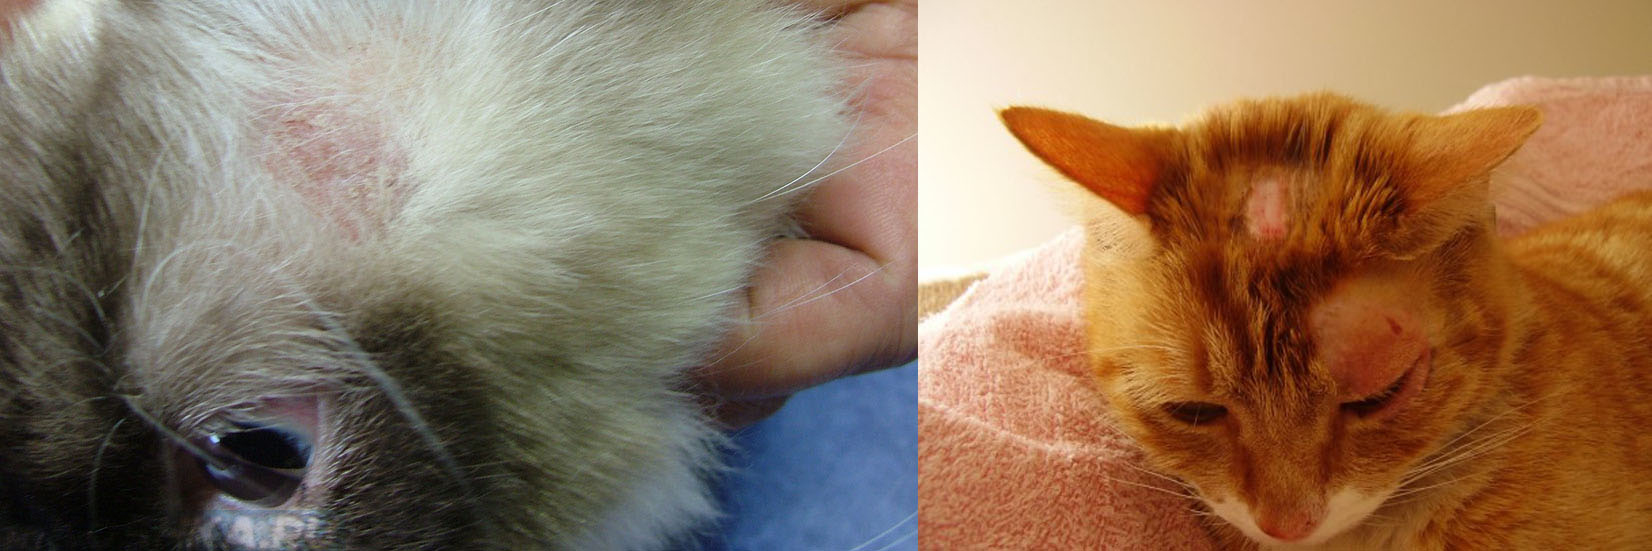 Как выглядит лишай у кошек. признаки и лечение стригущего лишая. 5 видов заболевания + 65 фото